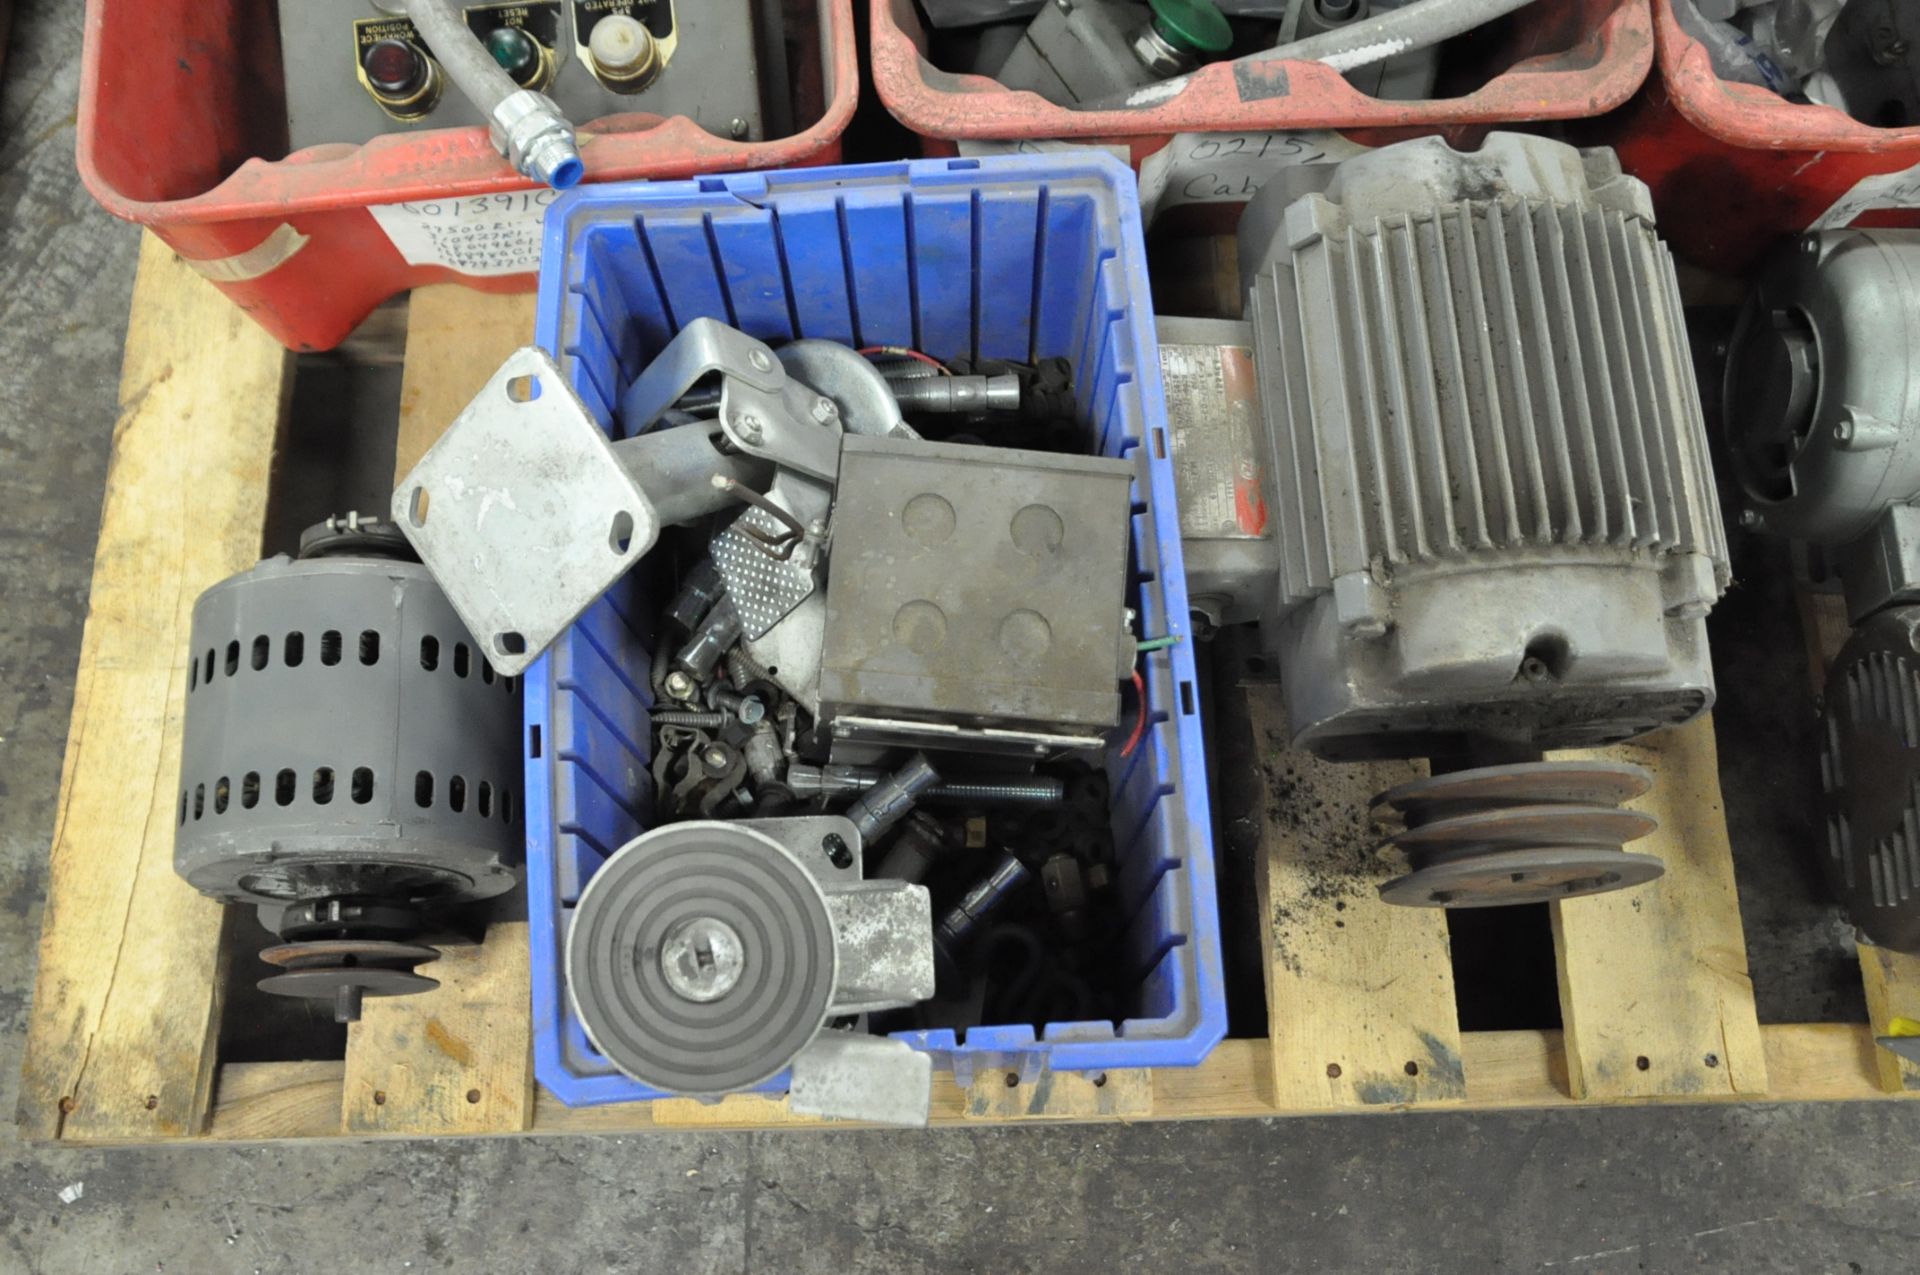 Lot-Motors, Electrical Boxes, Push Button Control Boxes, Pump, Fixtures etc. on (1) Pallet - Image 4 of 4